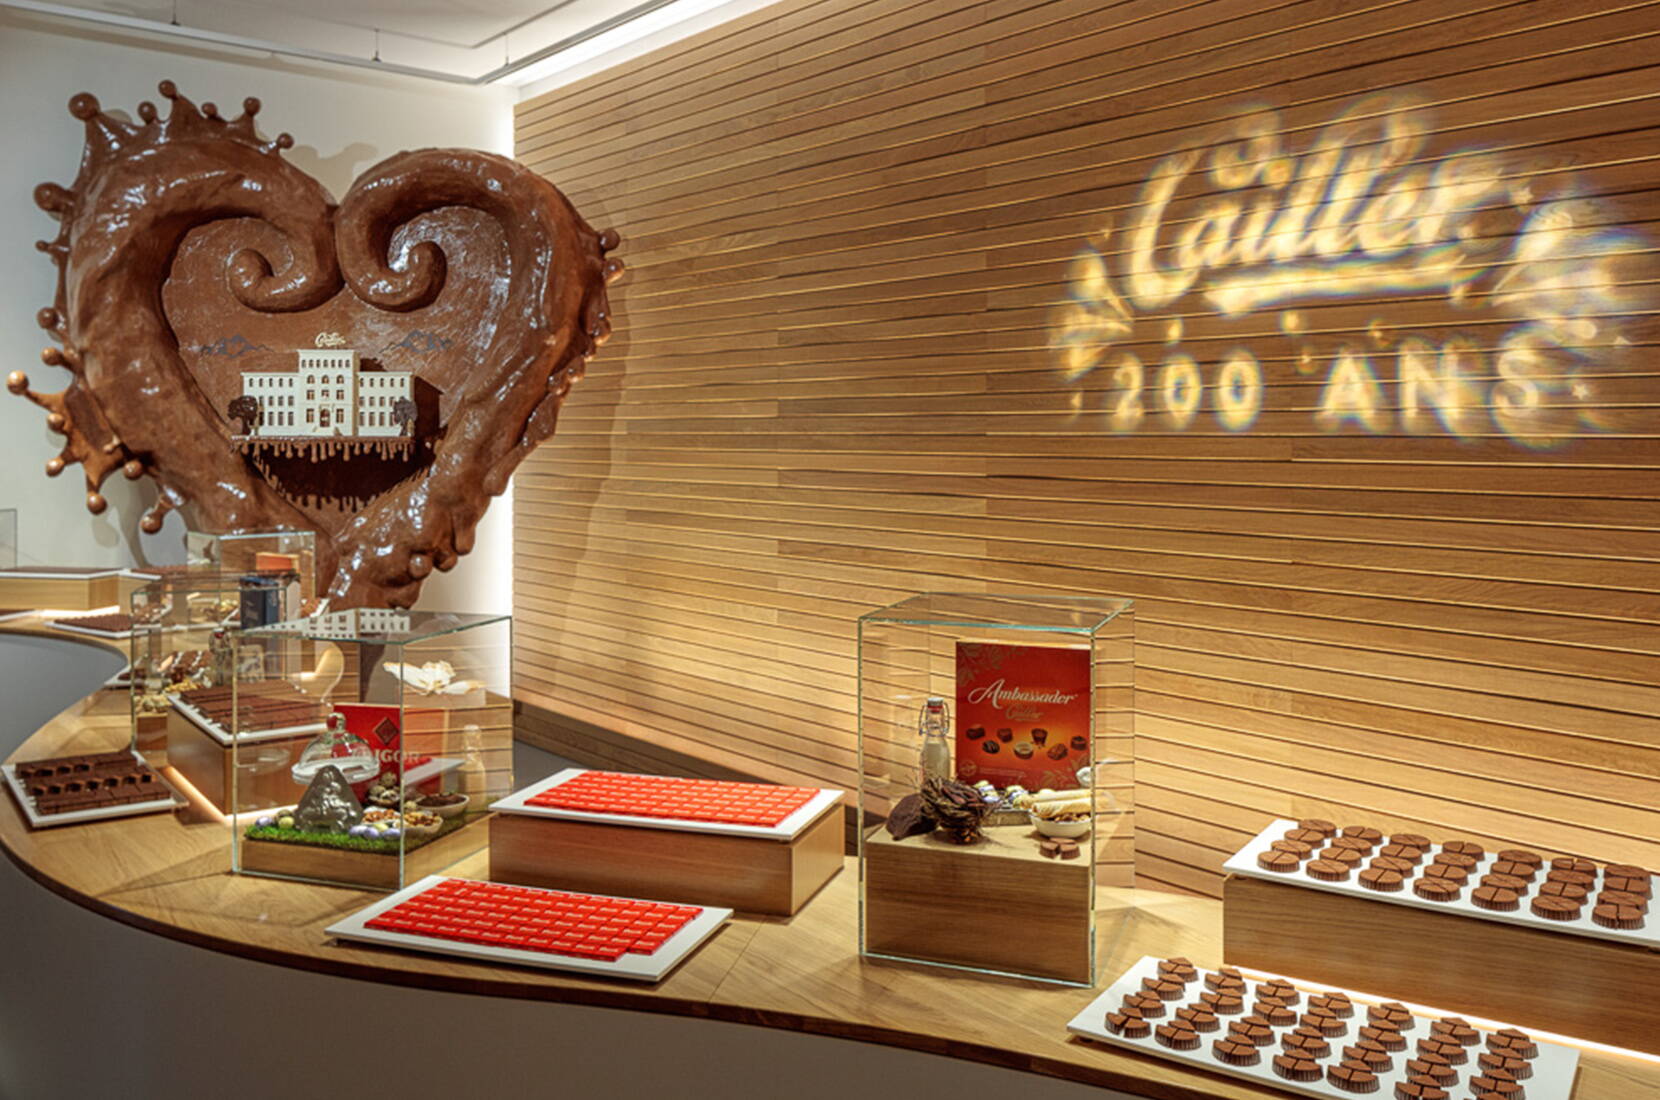 Sognate di esplorare una vera fabbrica di cioccolato? La Maison Cailler di Broc apre le sue porte per farvi conoscere il mondo Cailler. Vivete un viaggio interattivo e multisensoriale, imparate l'arte dei cioccolatieri e create il vostro cioccolato durante un laboratorio di cioccolato.